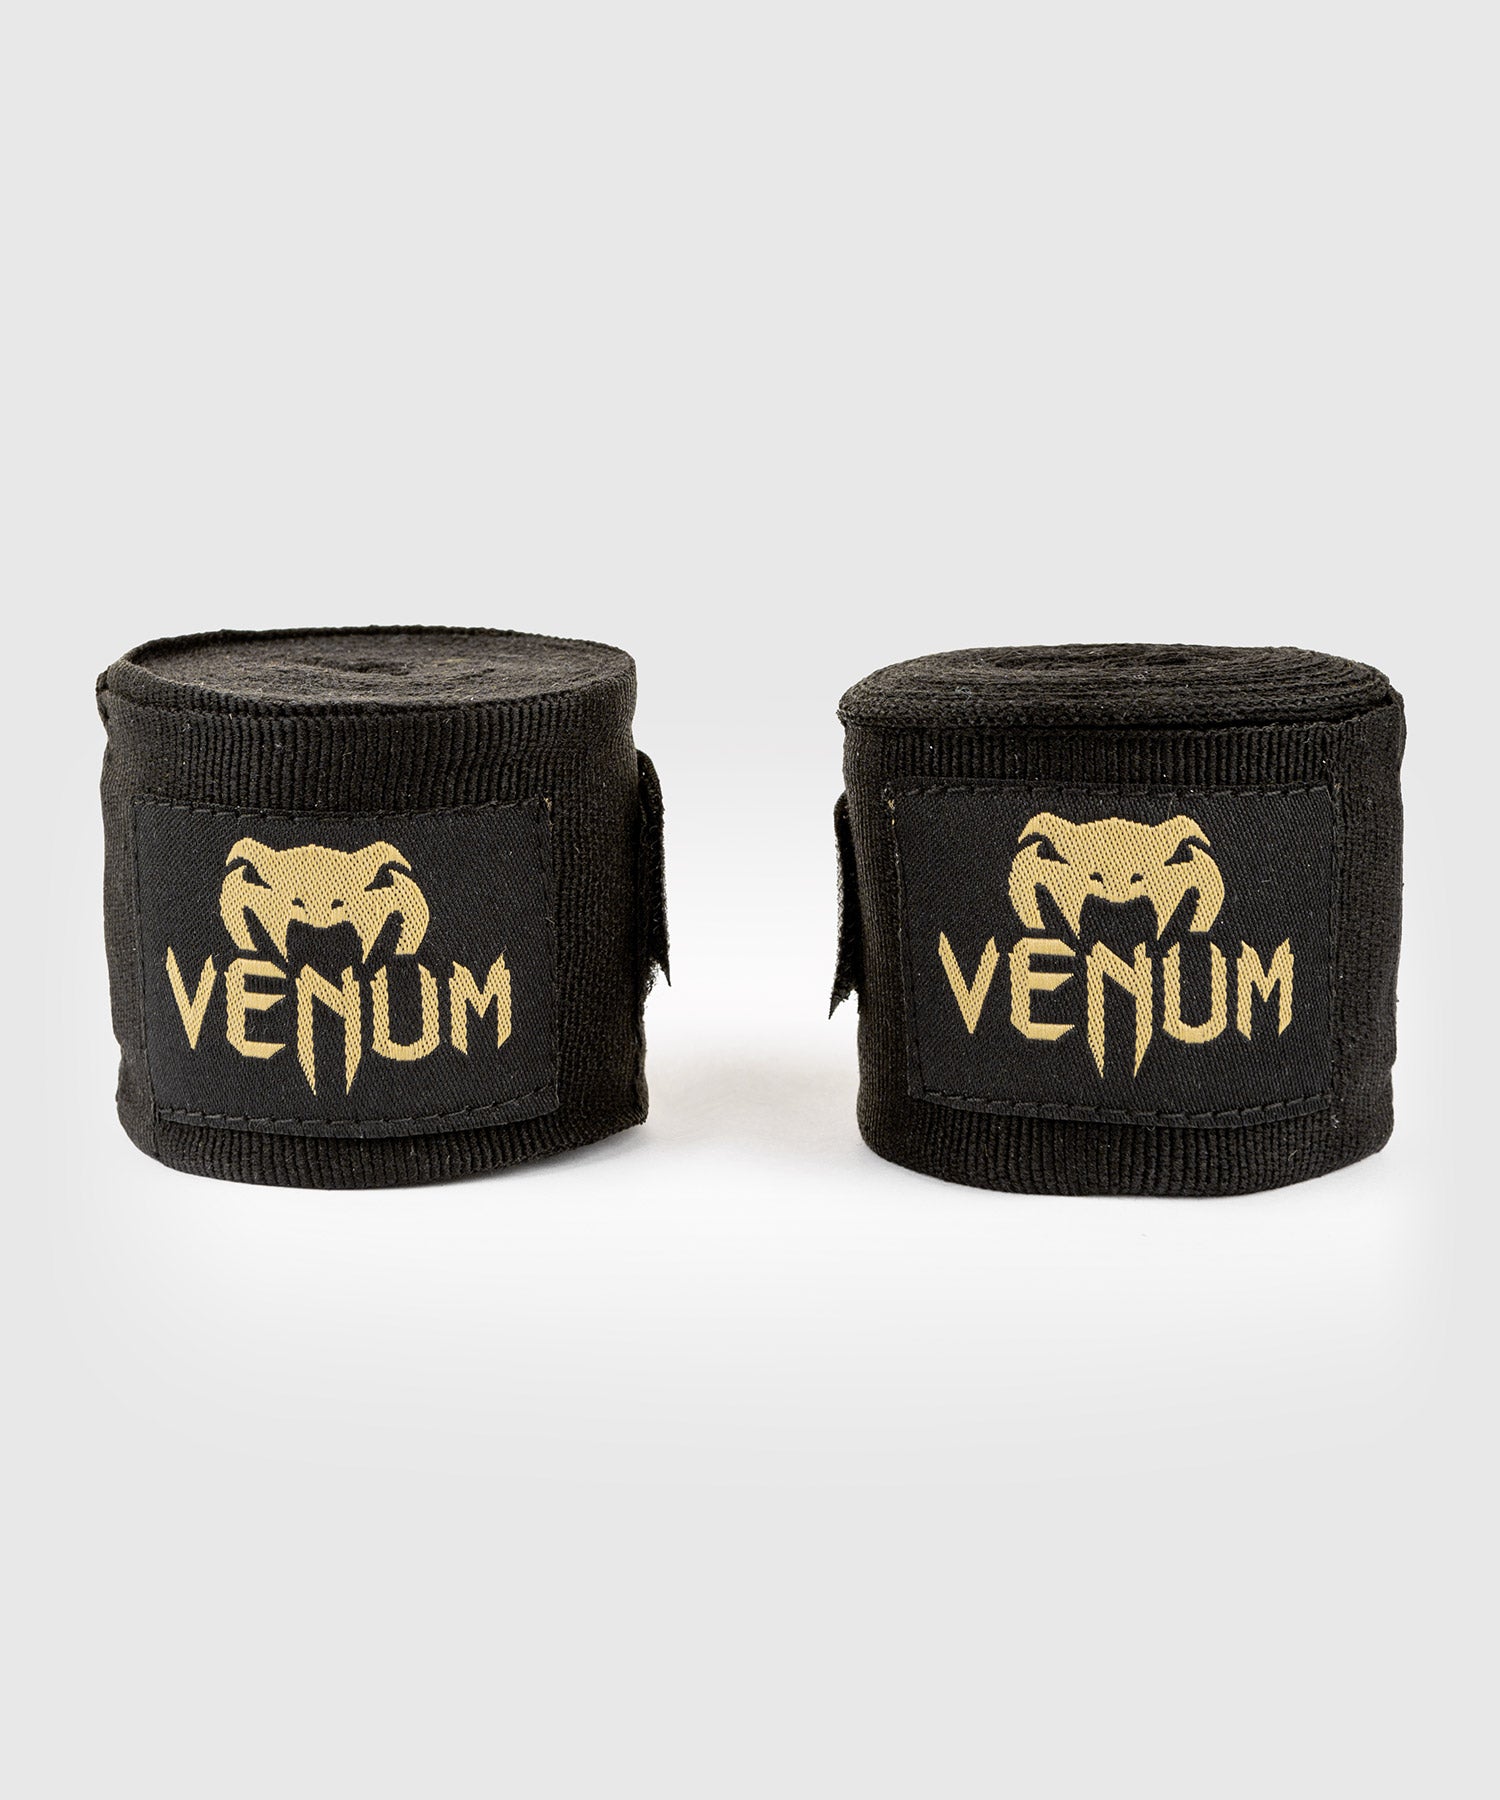 Bandes de Boxe Venum Kontact - 4 mètres - Noir/Or – Venum France